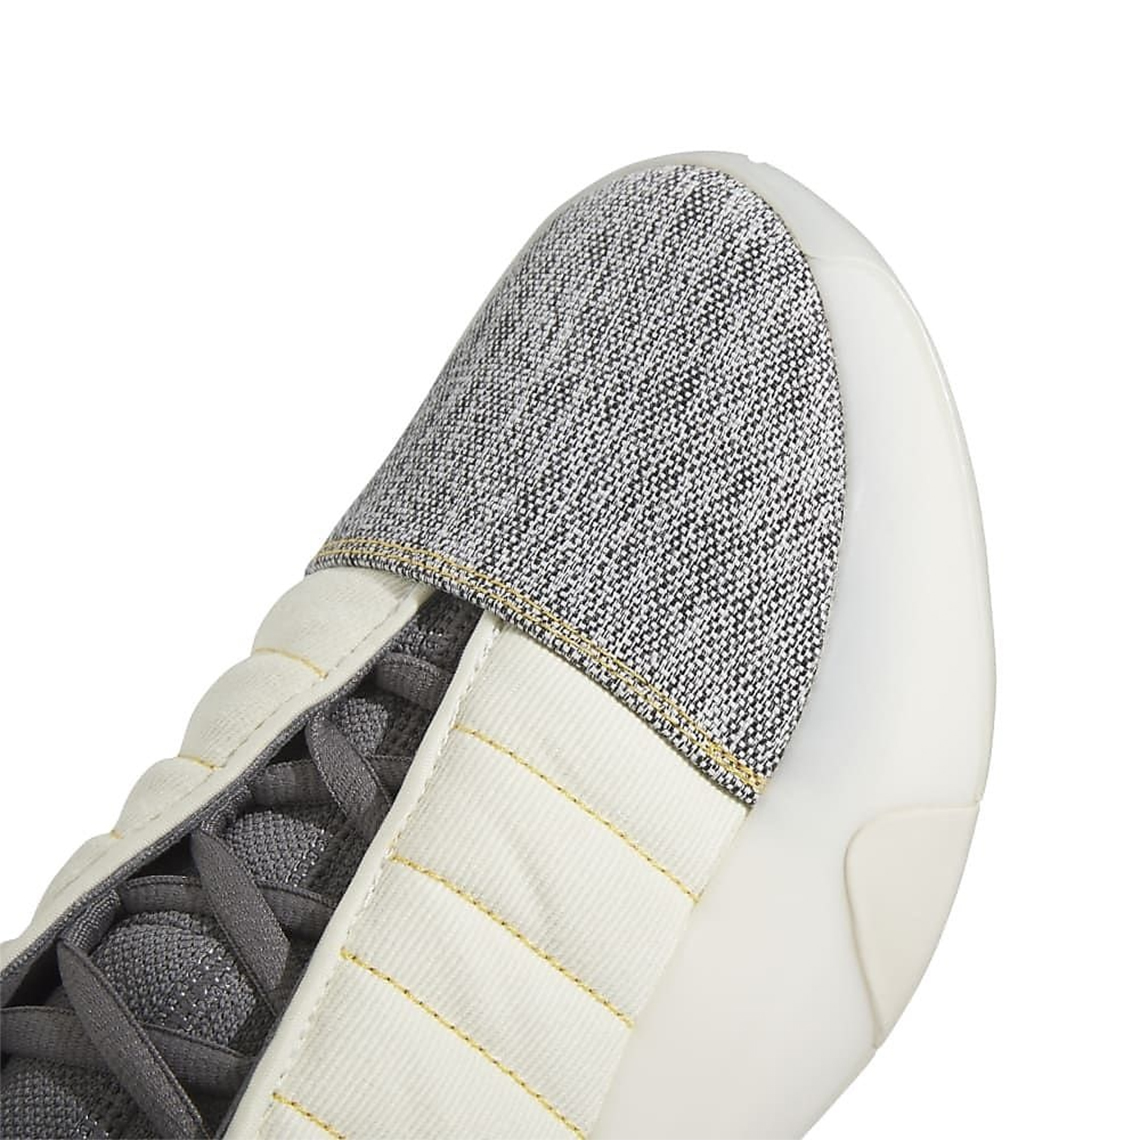 Adidas Harden Vol 7 Cream White Carbon Grey Four If5619 6